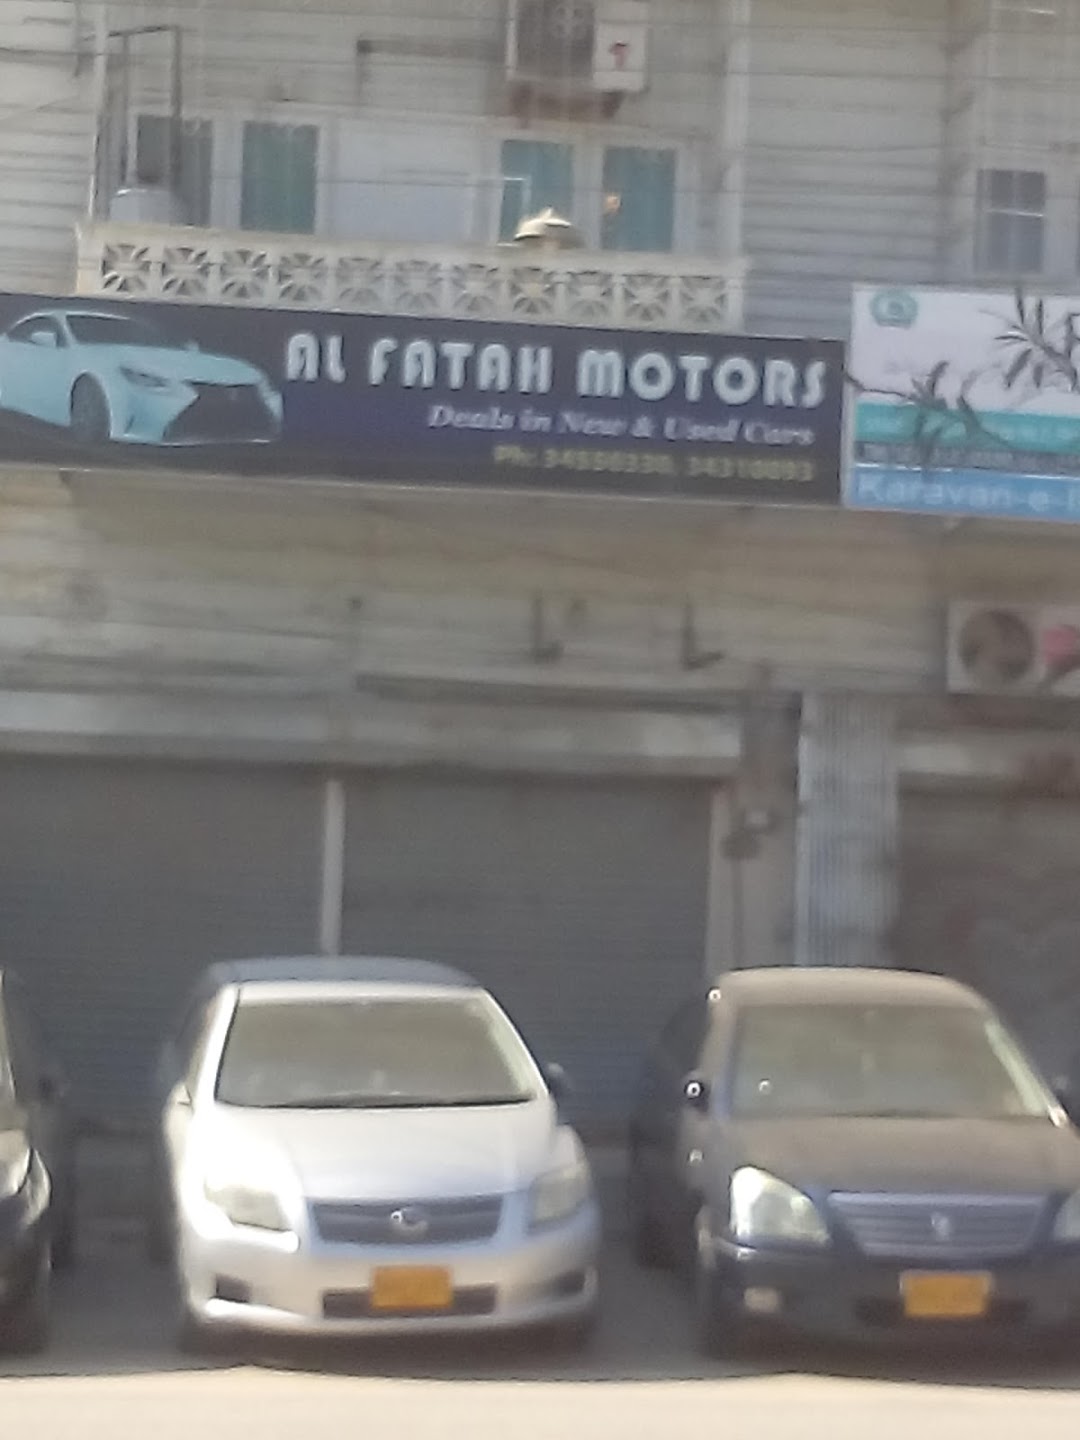 Al Fatah Motors